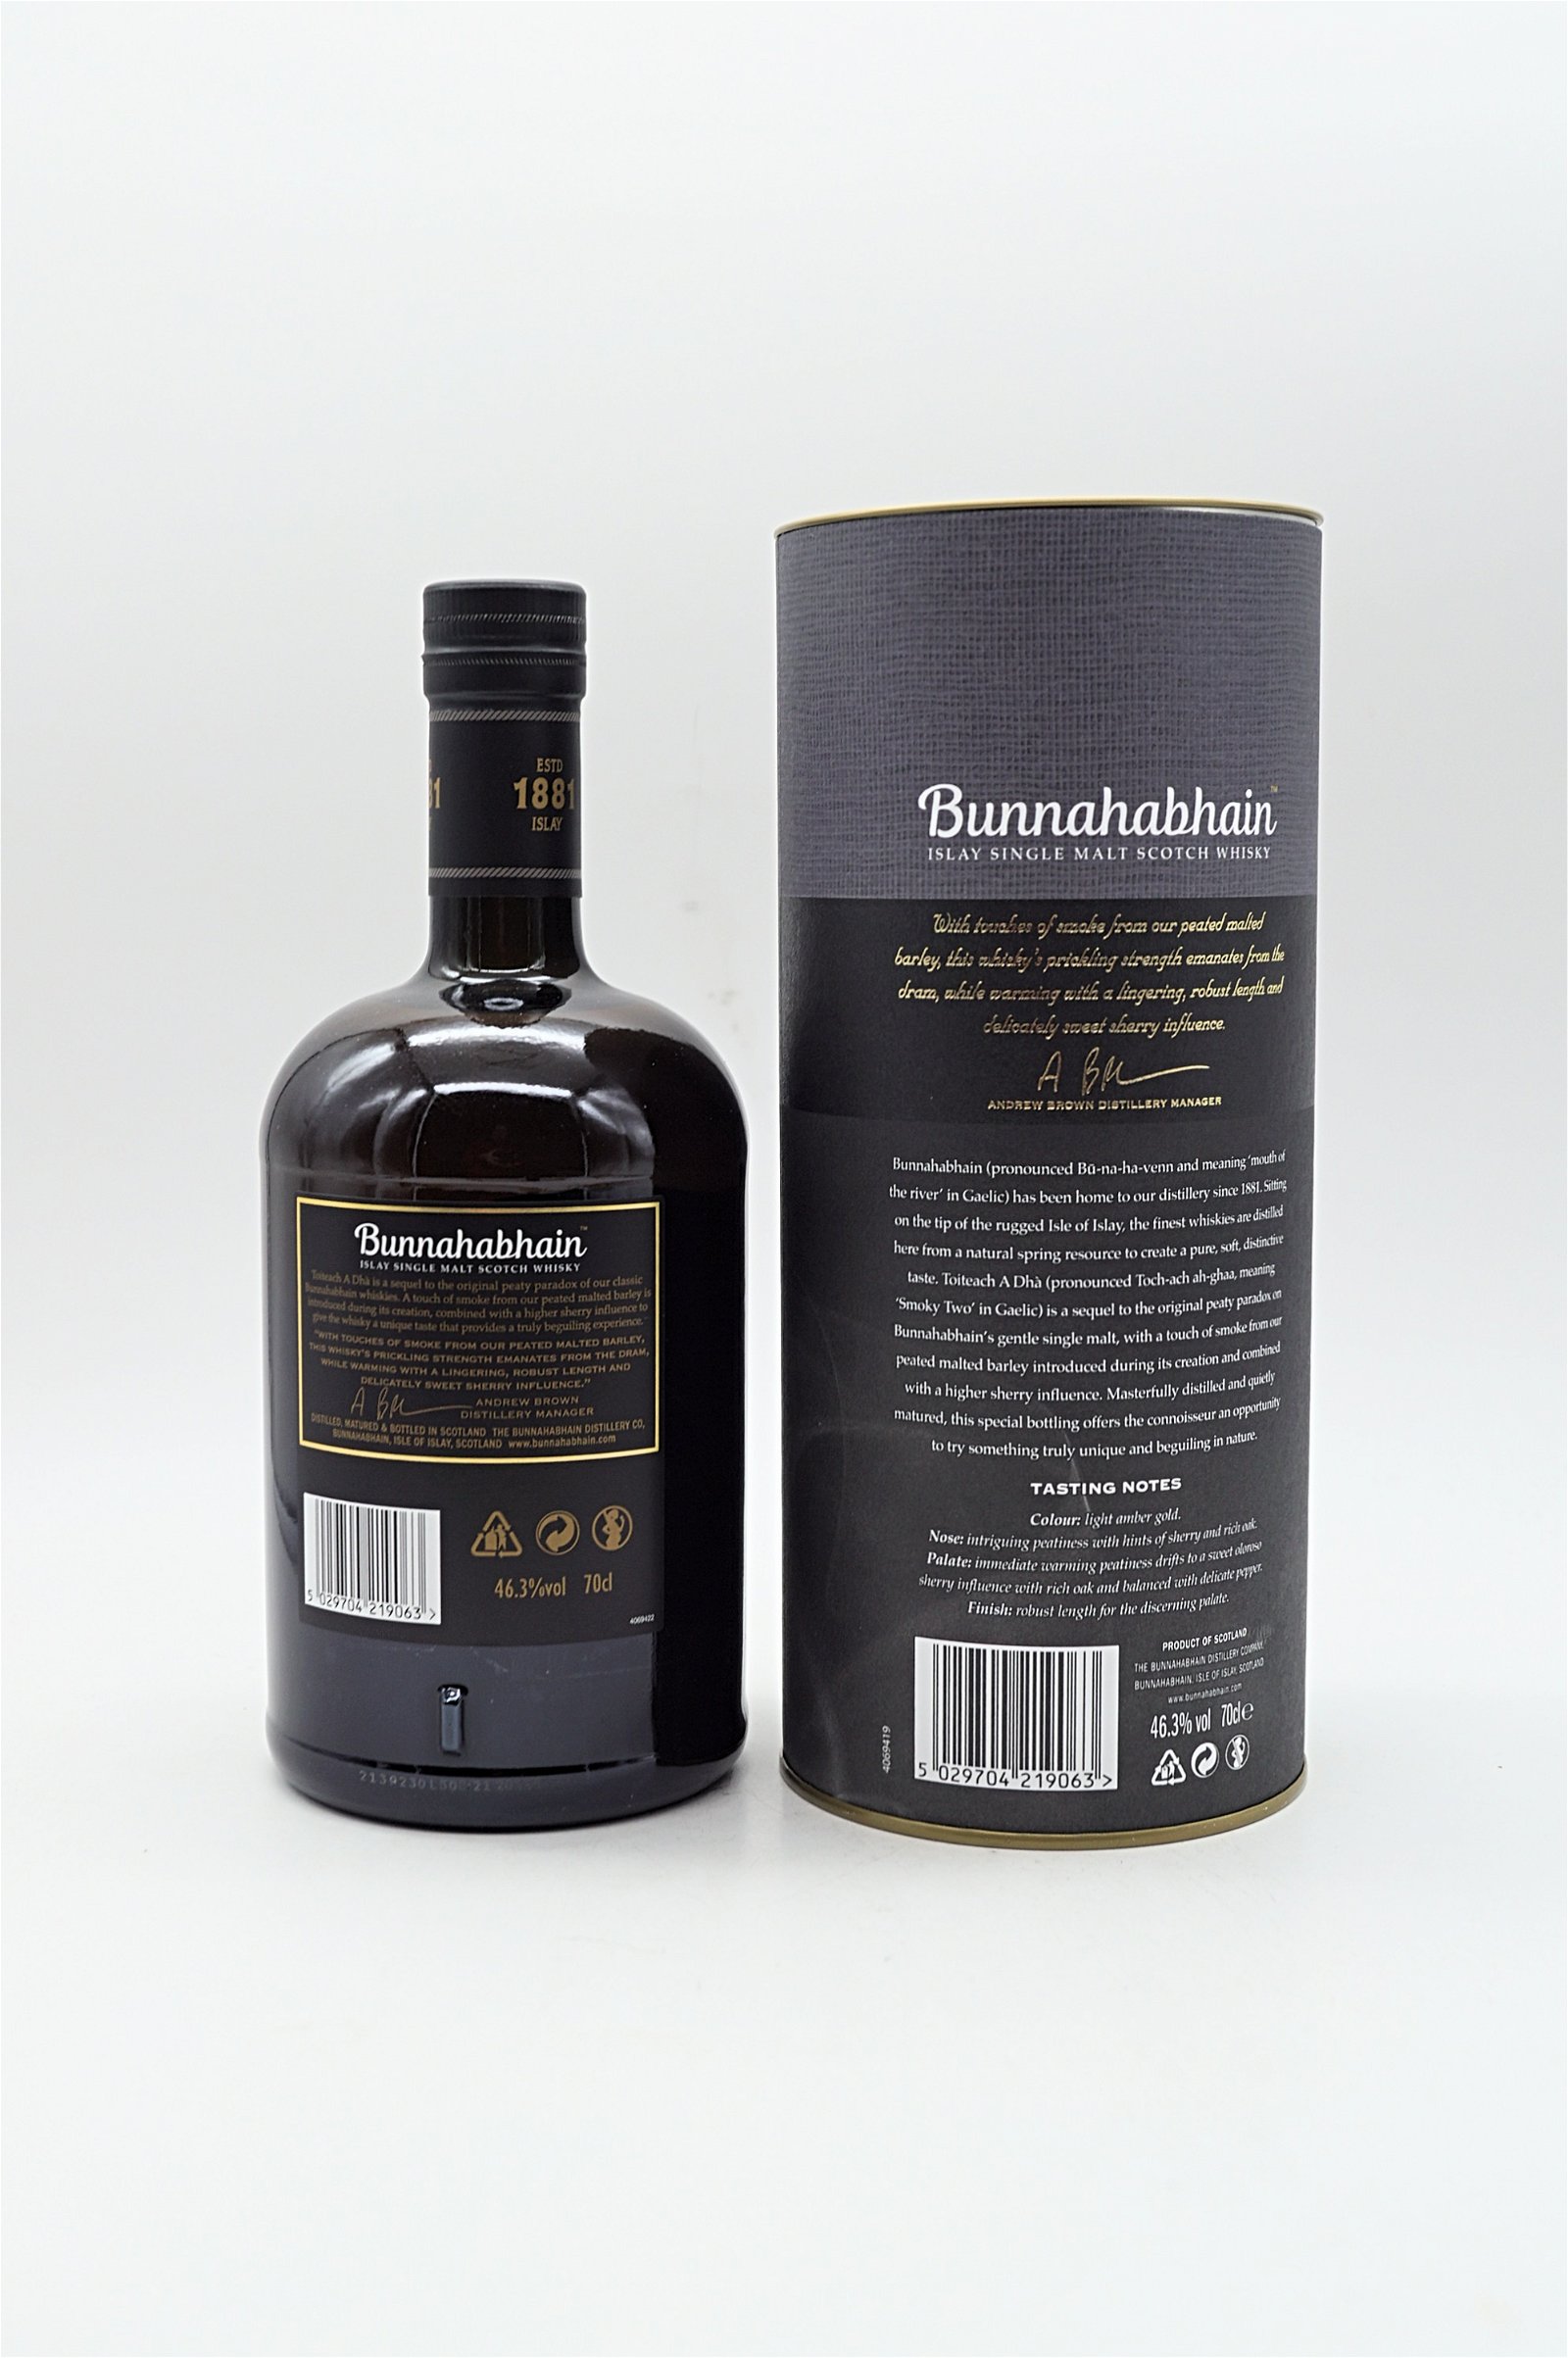 Bunnahabhain Toiteach A Dha Single Malt Scotch Whisky